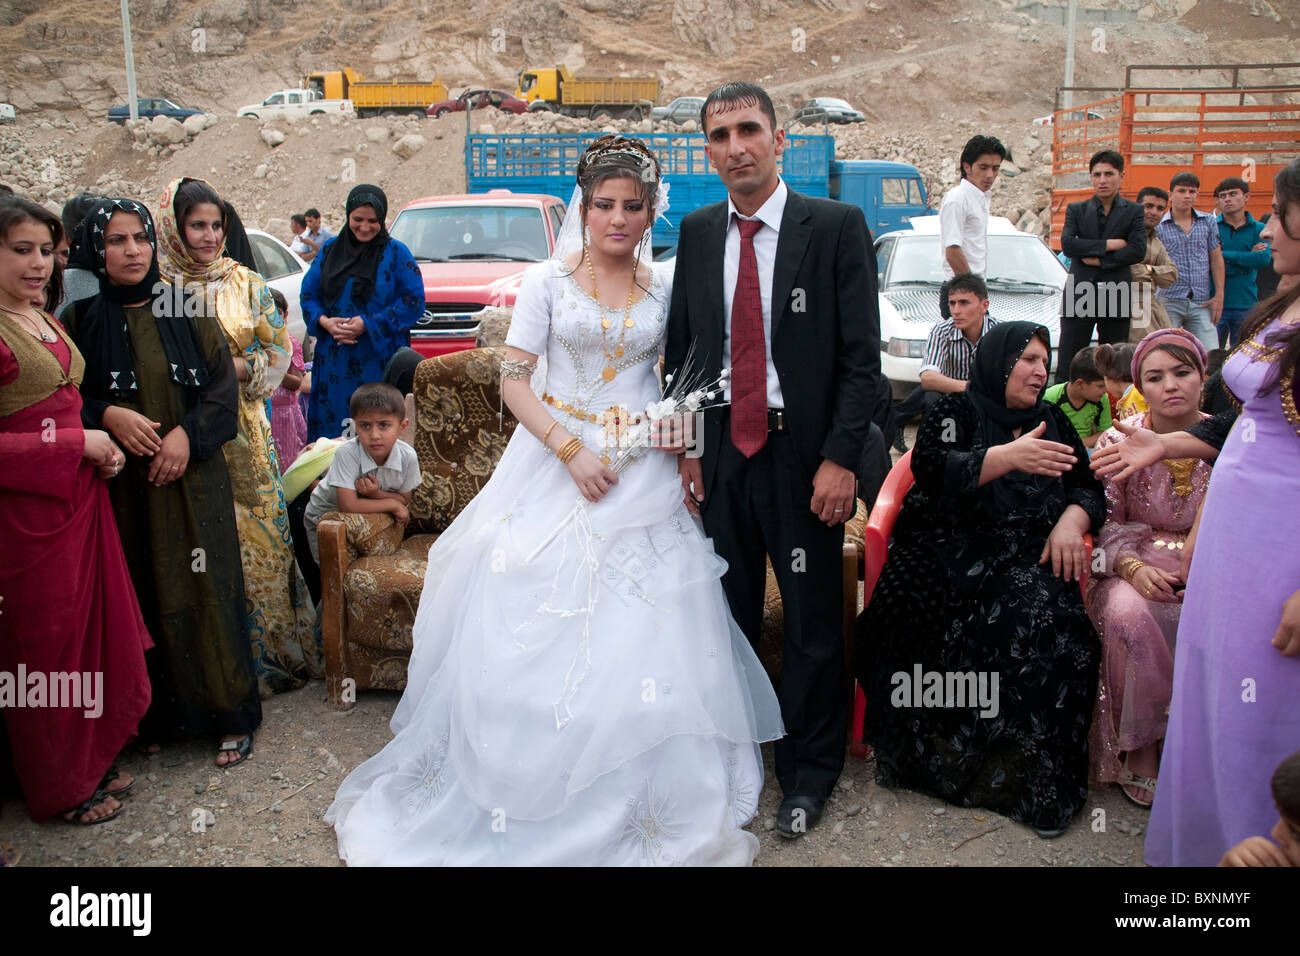 Kurdish wedding hi-res stock photography and images - Alamy